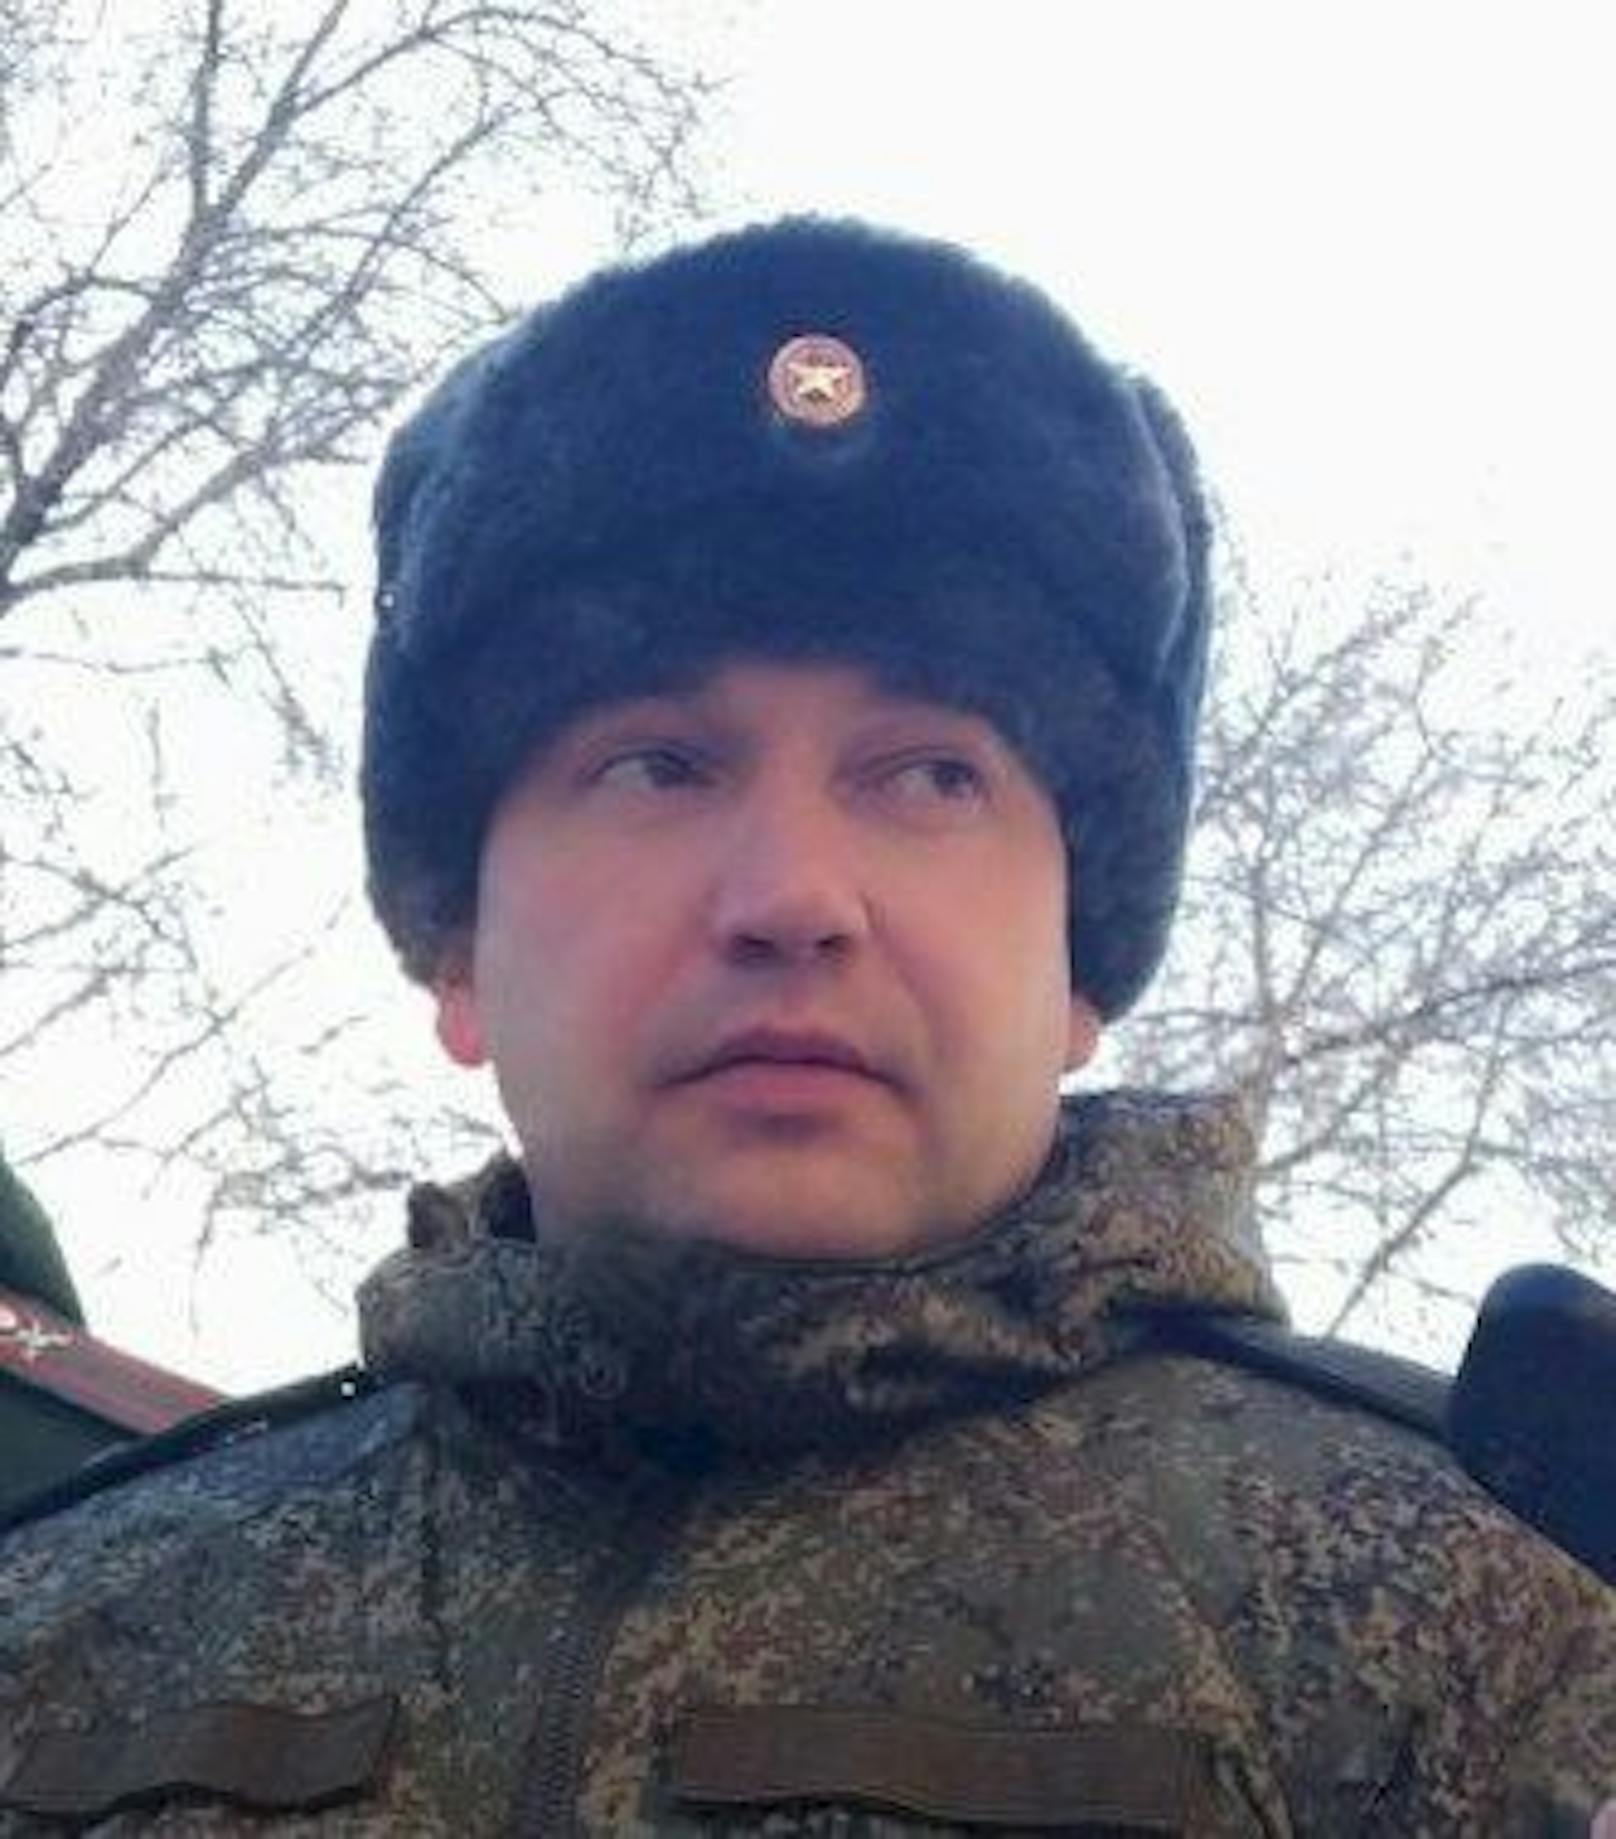 Bei der Schlacht um Charkow ist laut ukrainischen Angaben auch der russische General <a target="_blank" data-li-document-ref="100194456" href="https://www.heute.at/g/russen-generaele-bei-kampfhandlungen-in-ukraine-getoetet-100194456">Witali Gerassimow</a>, Stabschef der 41. Armee, getötet worden.&nbsp;